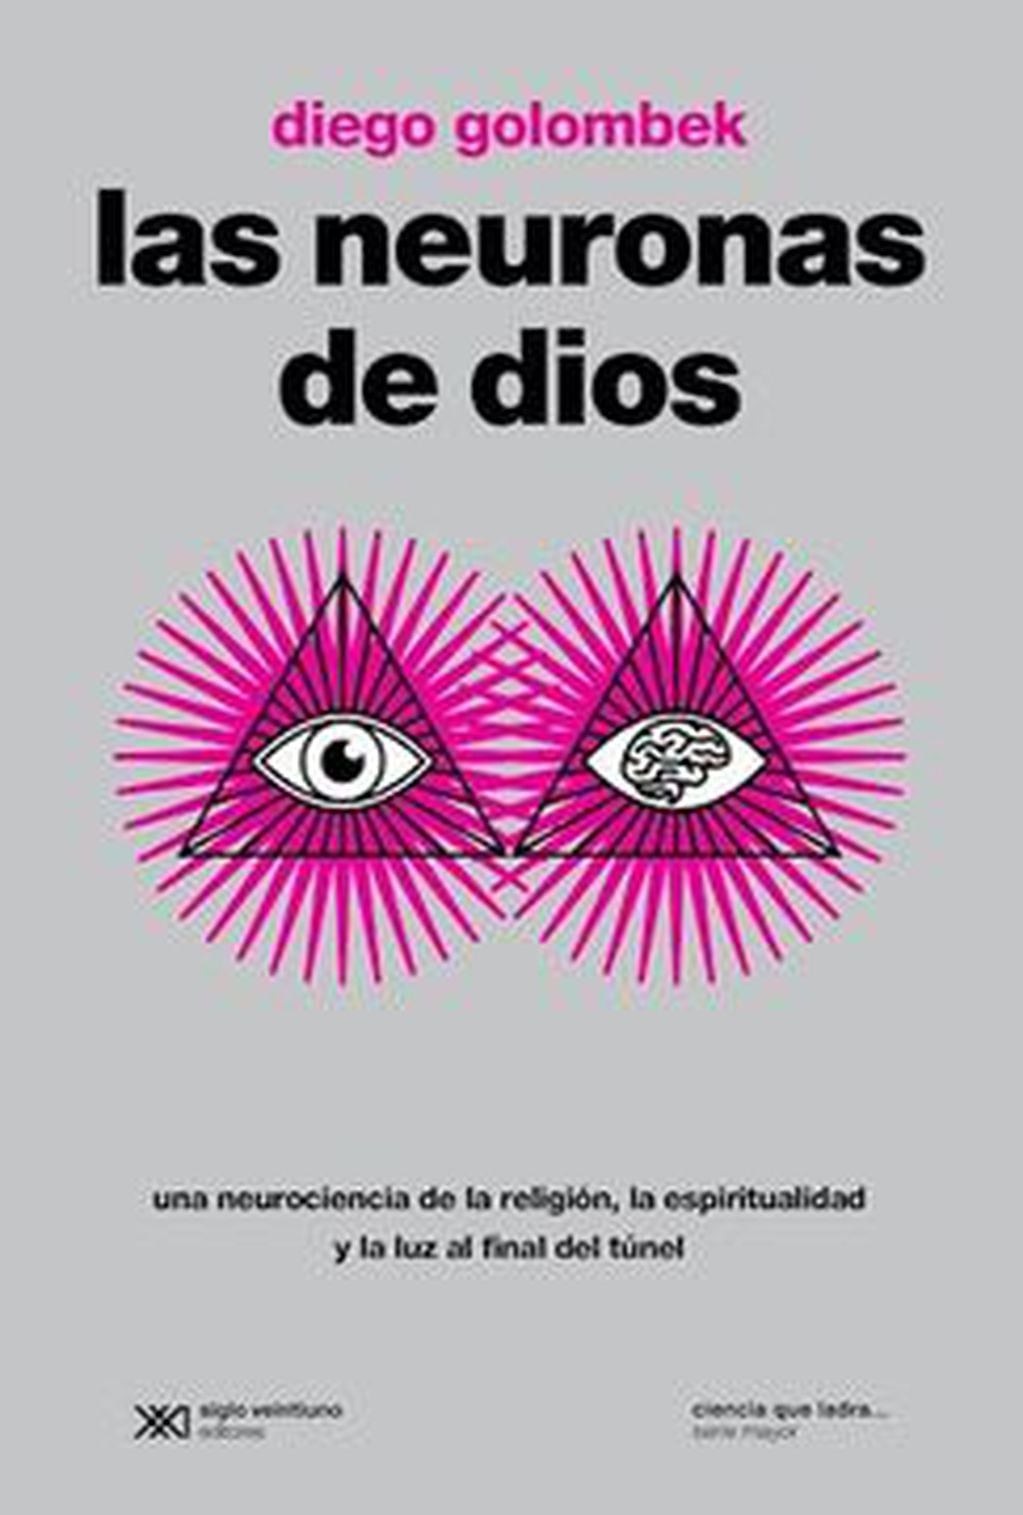  Publicado en 2015 y ahora reeditado, el exitoso libro Las neuronas de dios, de Golombek, se convirtió, en poco tiempo, en un clásico del periodismo de divulgación. Foto: Federico Lopez Claro